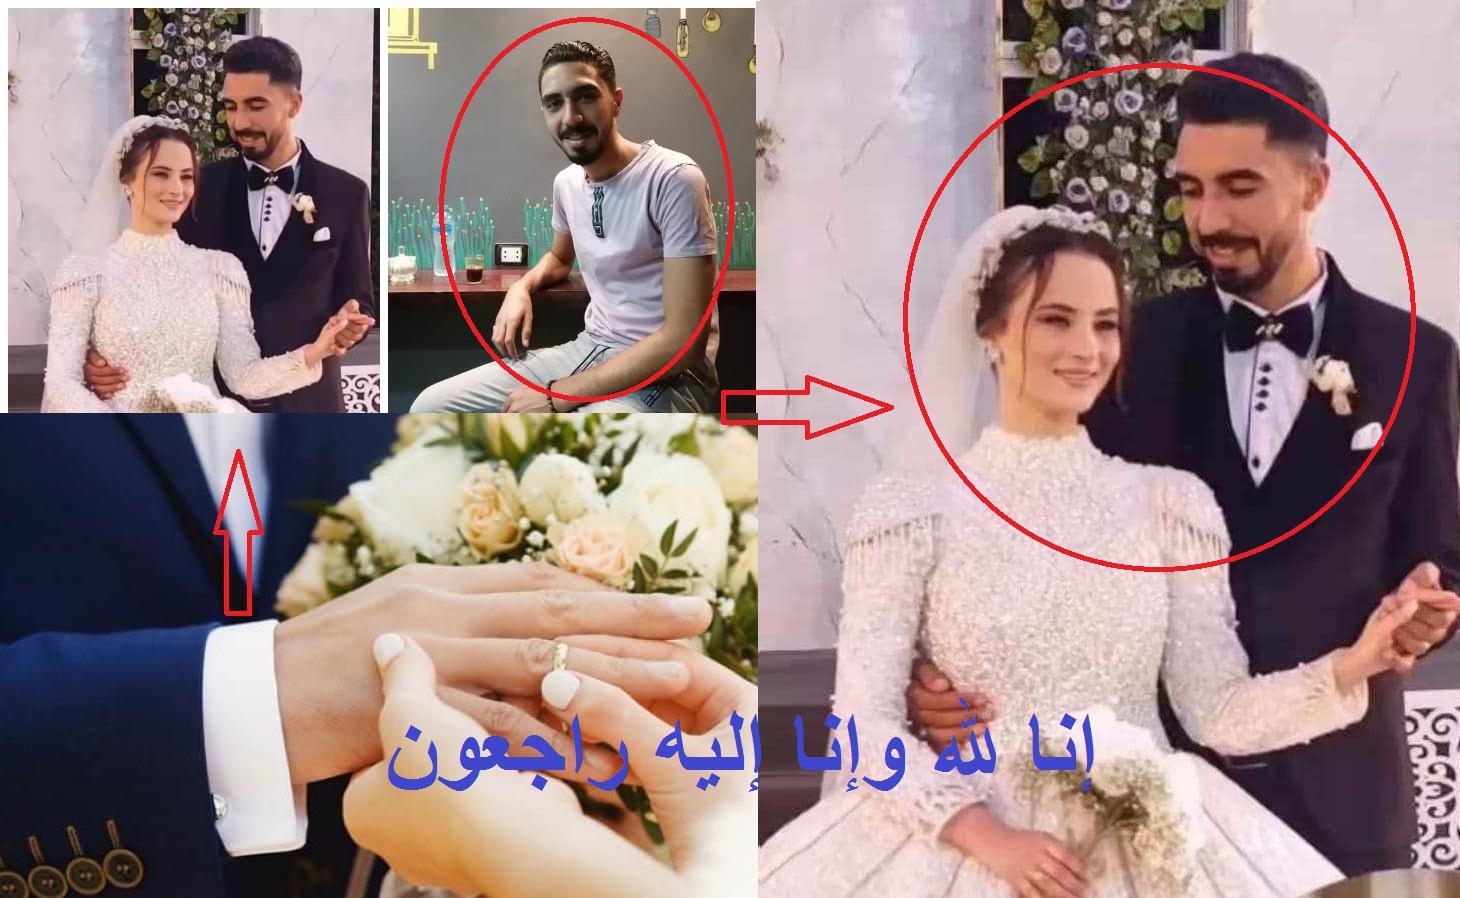 وداعاً رامي ومنار عرسان الجنة| وفاة عروسين يوم الصباحية وسمنود تتشح بالسواد ومشهد جنائزي مهيب لعروسي الغربية